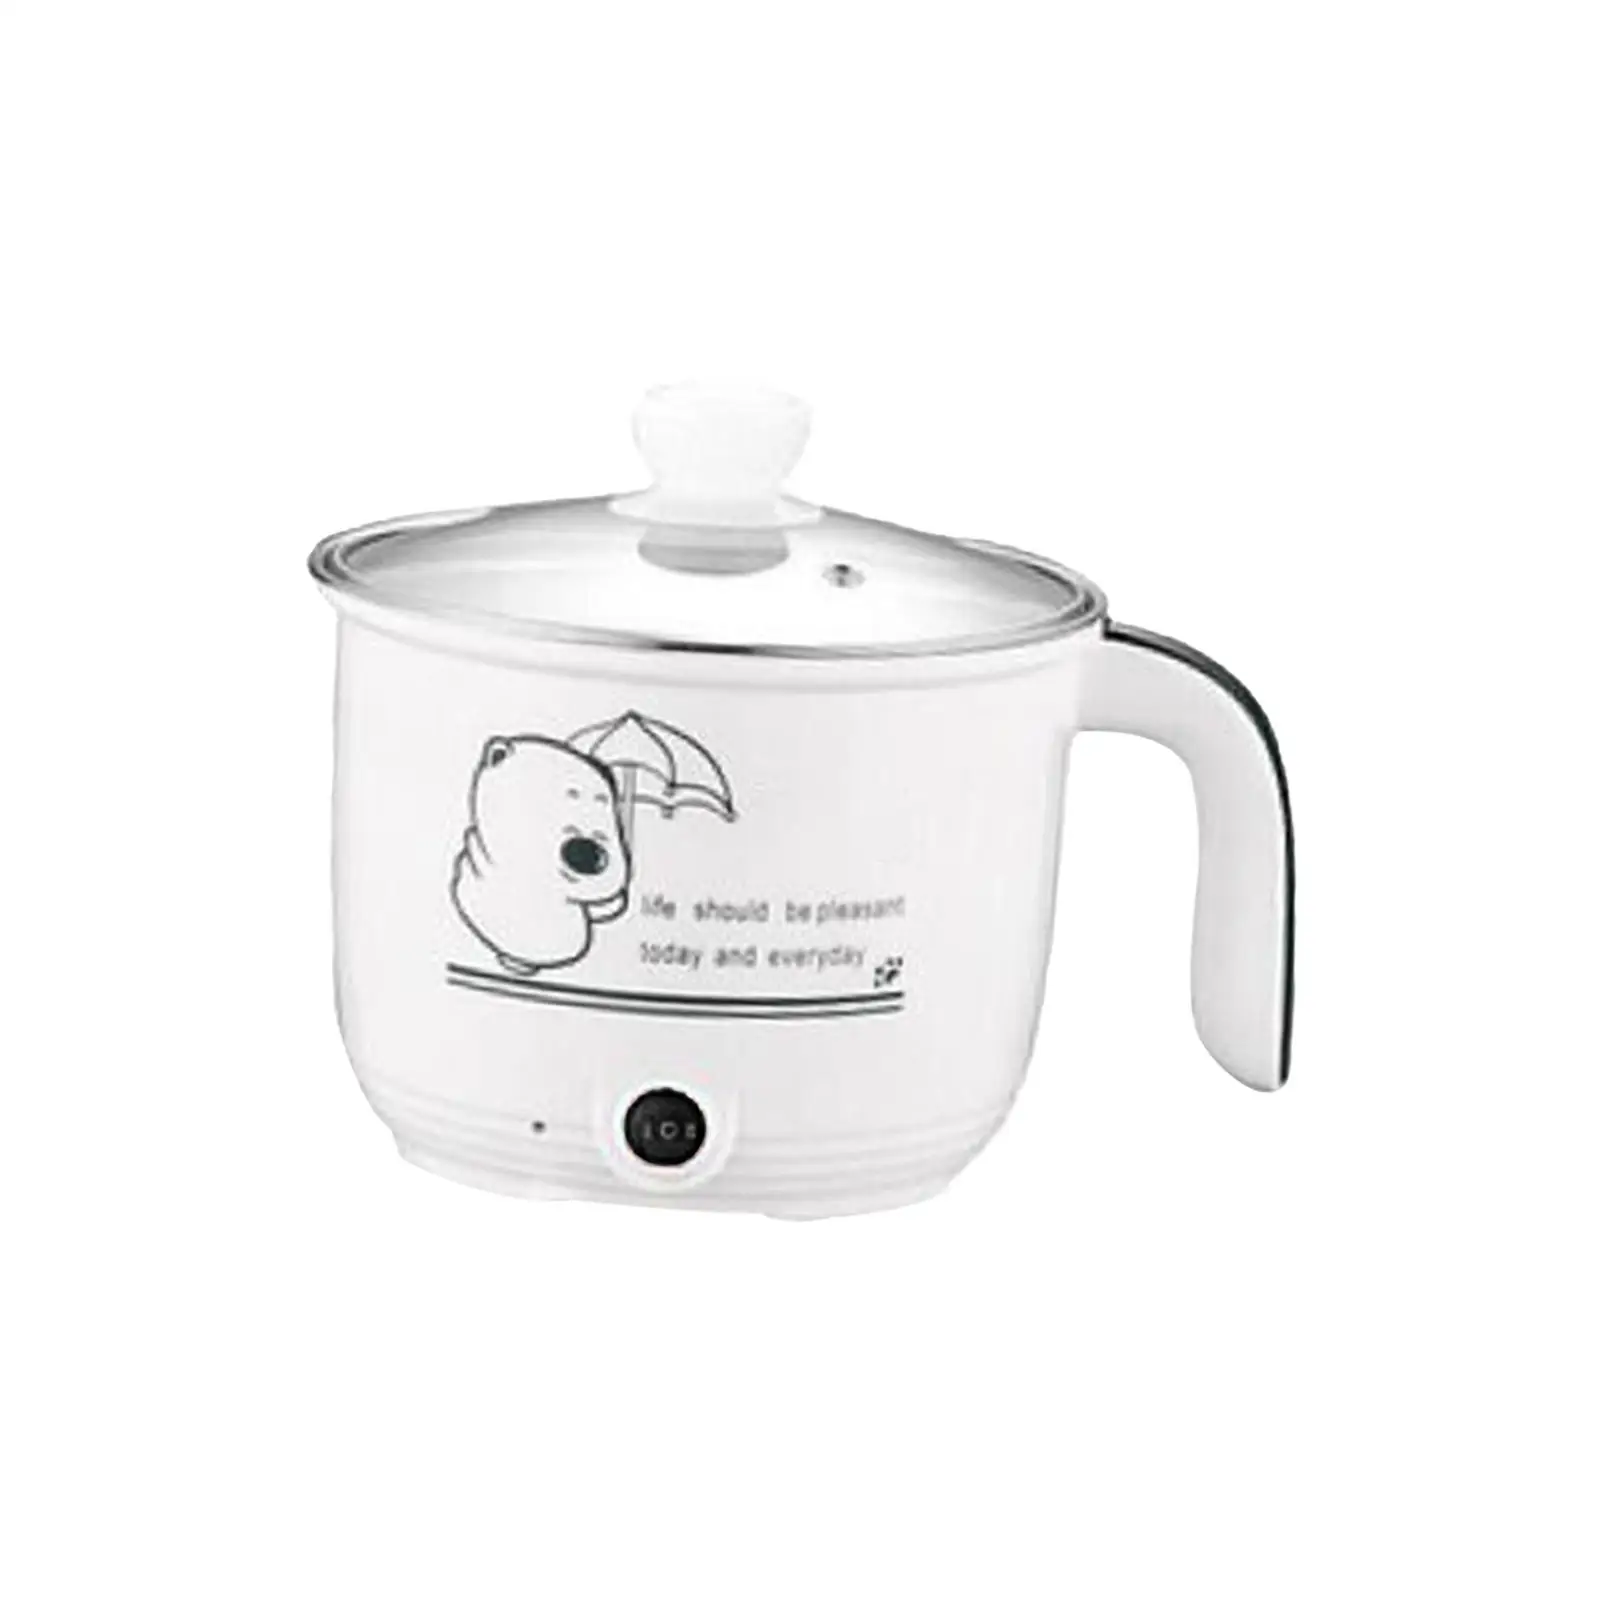 Mini Hot Pot Nonstick 1.8L Multifunctional Portable Household Kitchen Cooking Appliances for Porridge Oatmeal Noodles Eggs Ramen